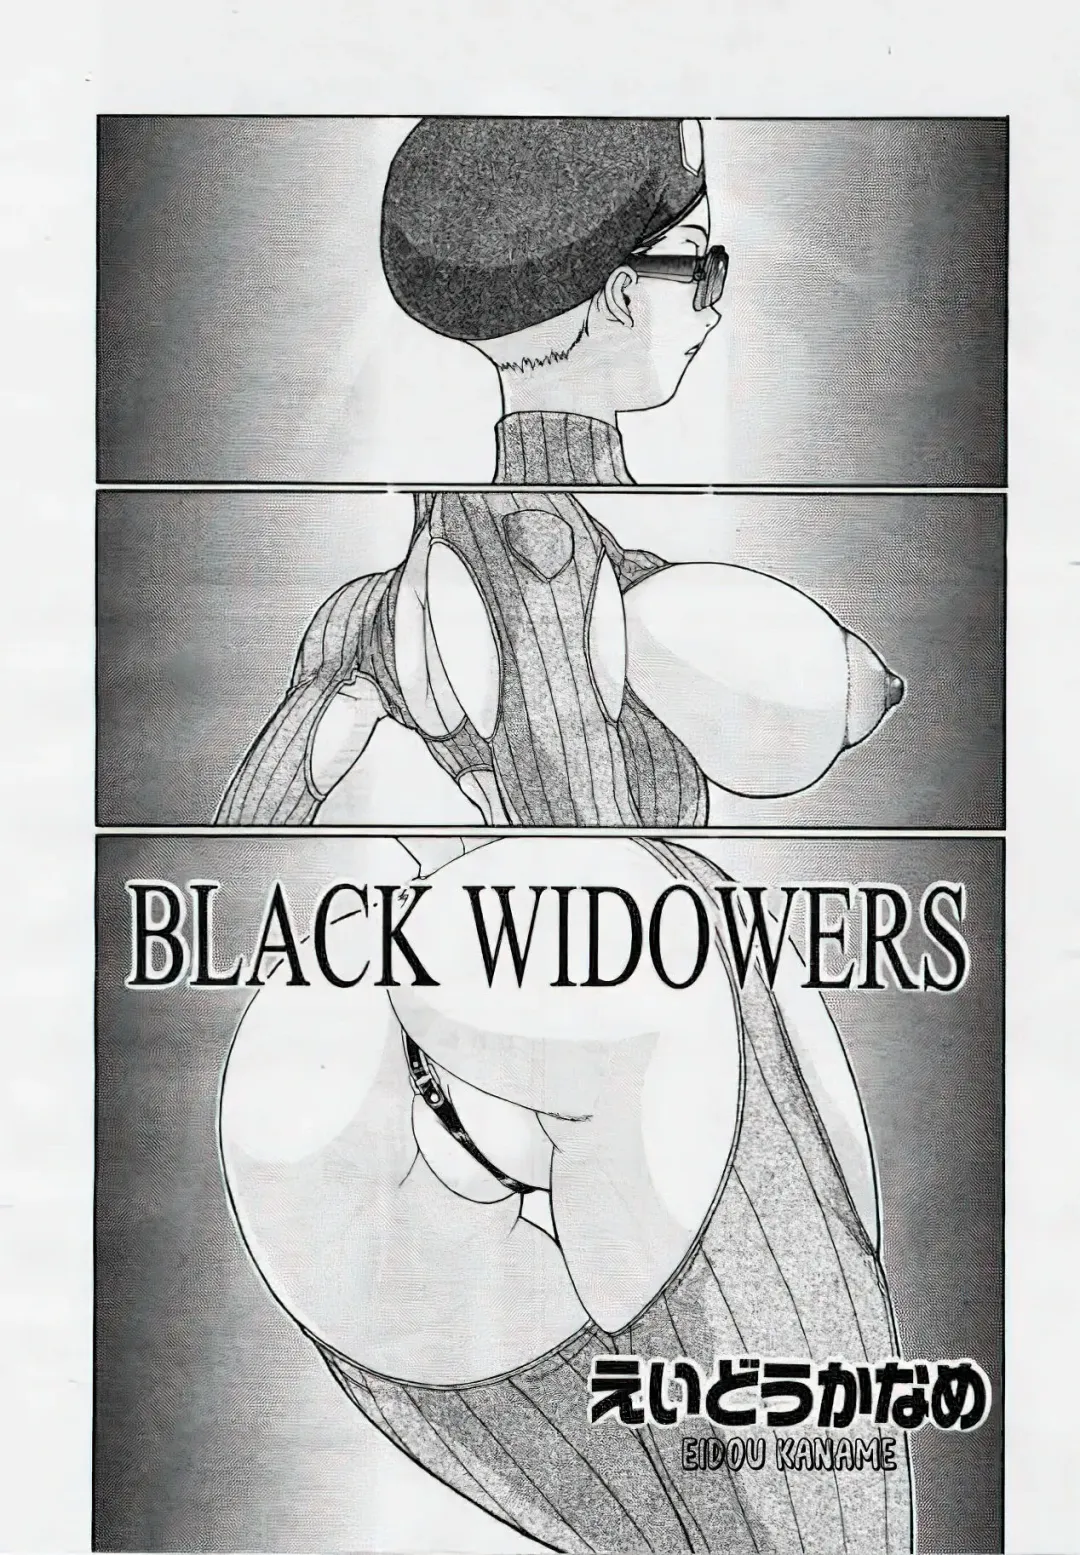 Read [Eidou Kaname] Black Widowers - Fhentai.net